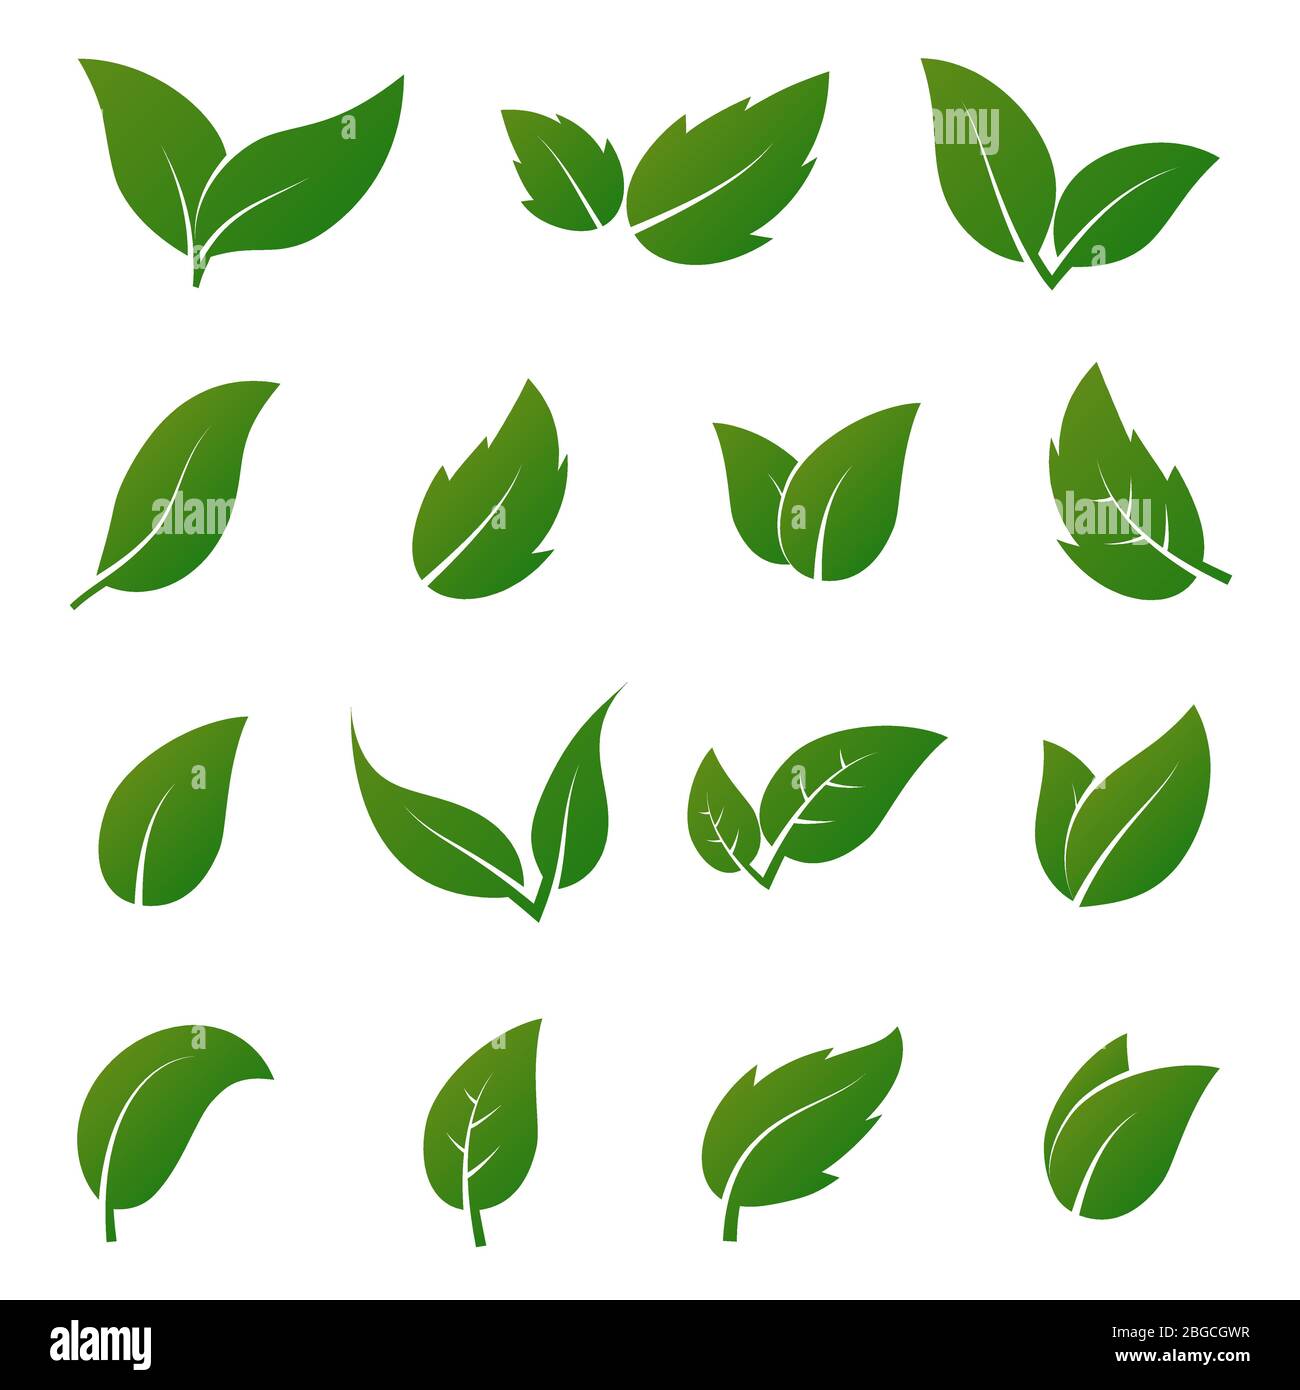 Vektorsymbole mit grünen Lamellen. Frühling hinterlässt Ökologie Symbole. Grünes Blatt und Frühling Natur organische Illustration Stock Vektor